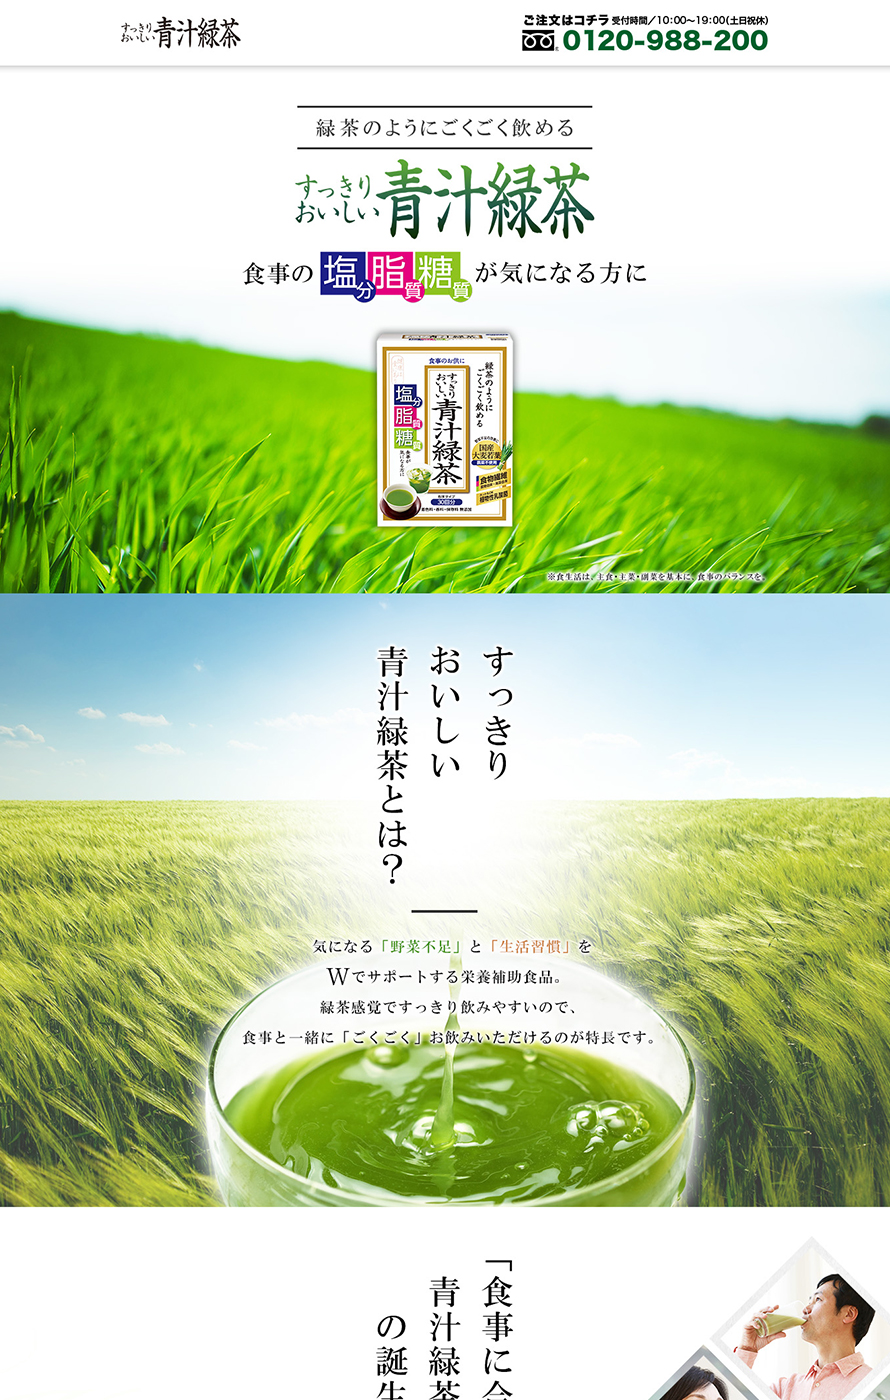 すっきりおいしい青汁緑茶 ブランドサイト ウェブ制作実績 アイコンサルティング